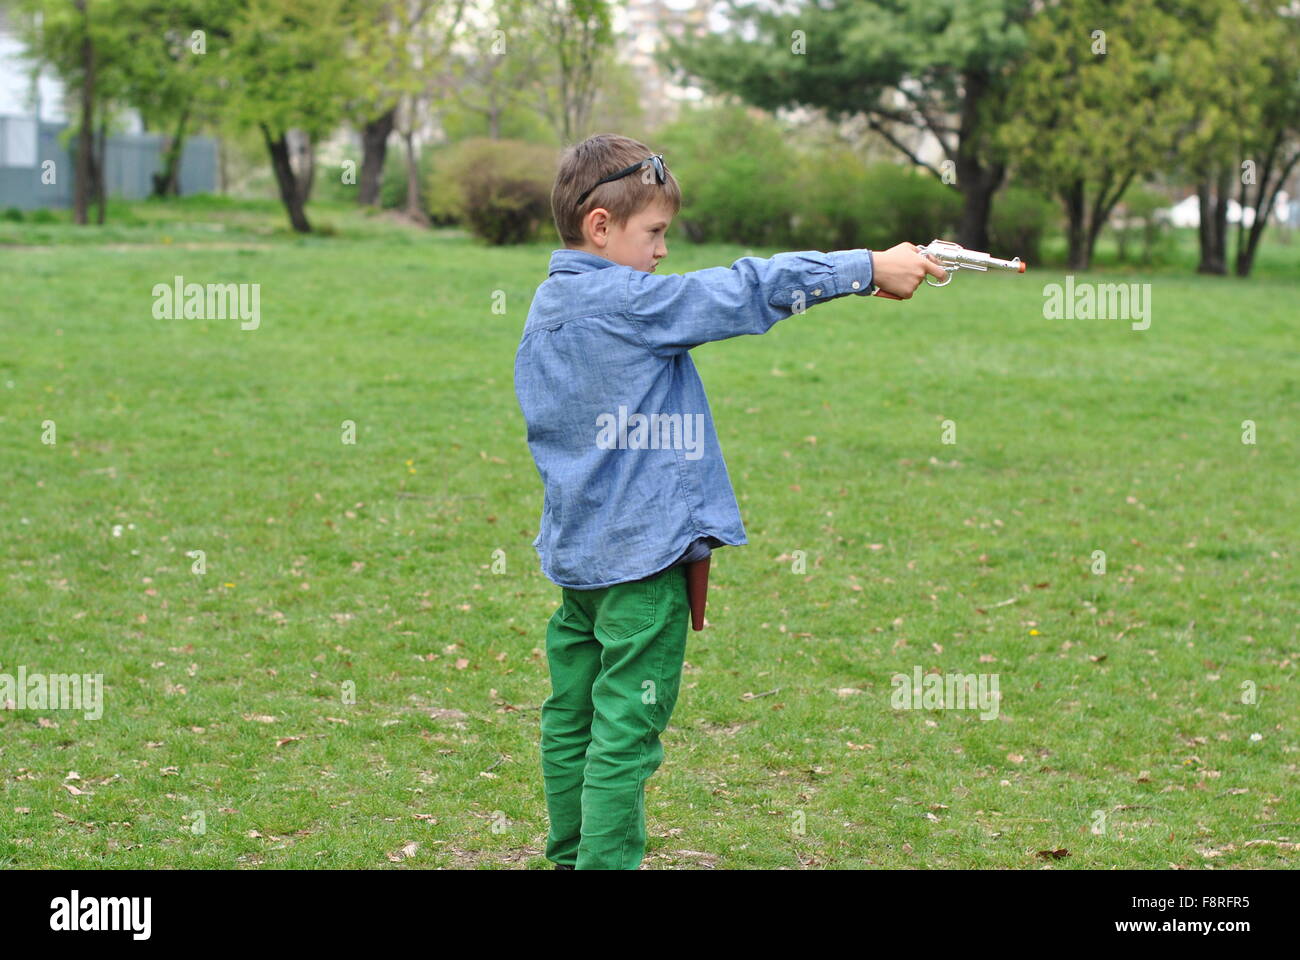 Garçon jouant avec un pistolet jouet Banque D'Images